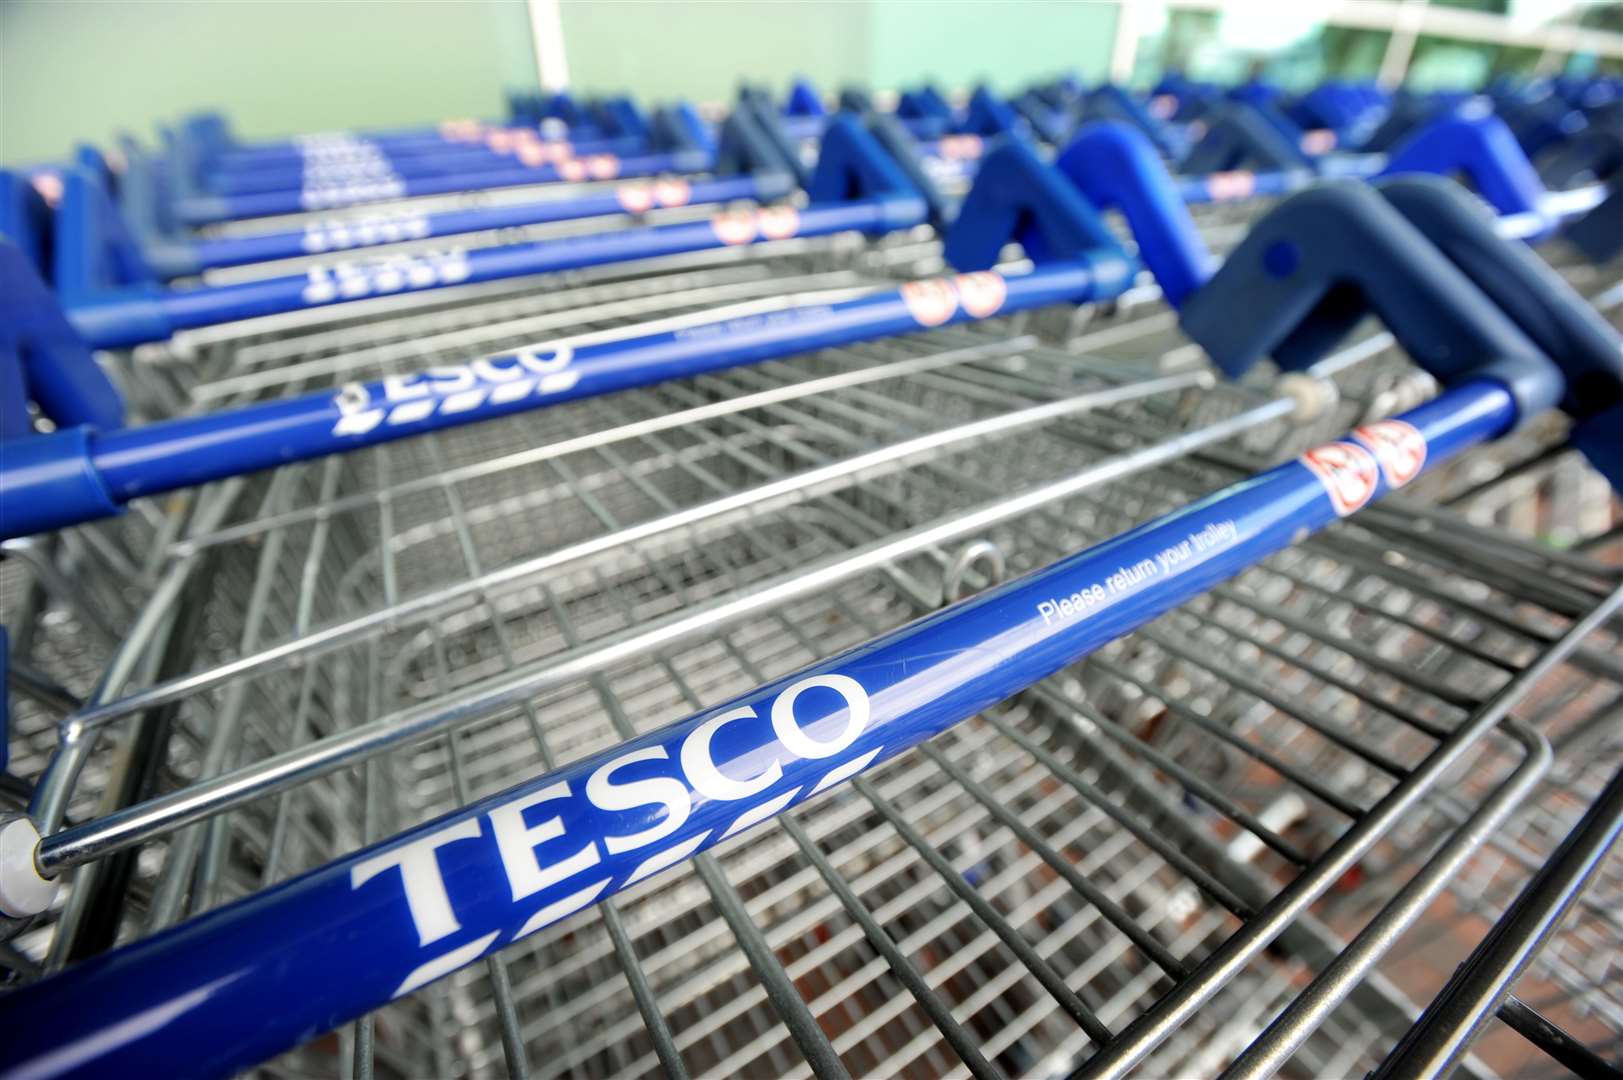 Tesco shopping trolleys. Picture: Gair Fraser/SPP.